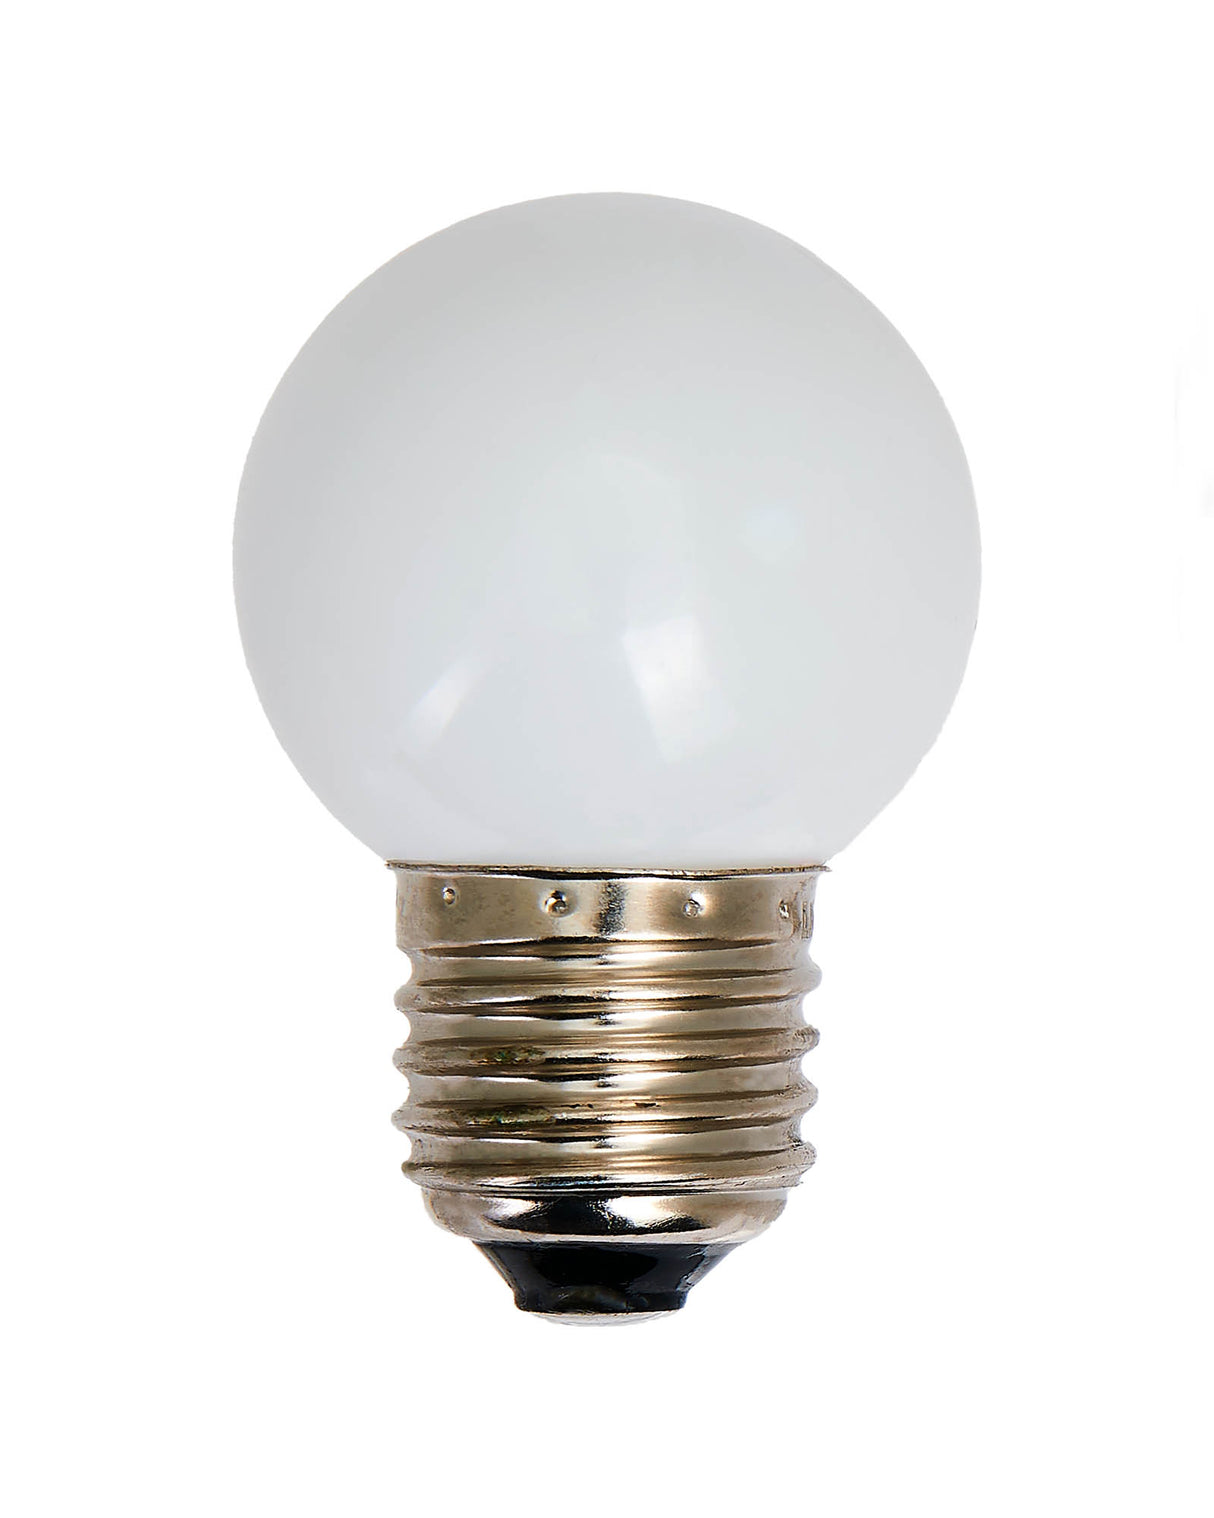 LINK FESTOON 0.6W E27 LED Bulb, White